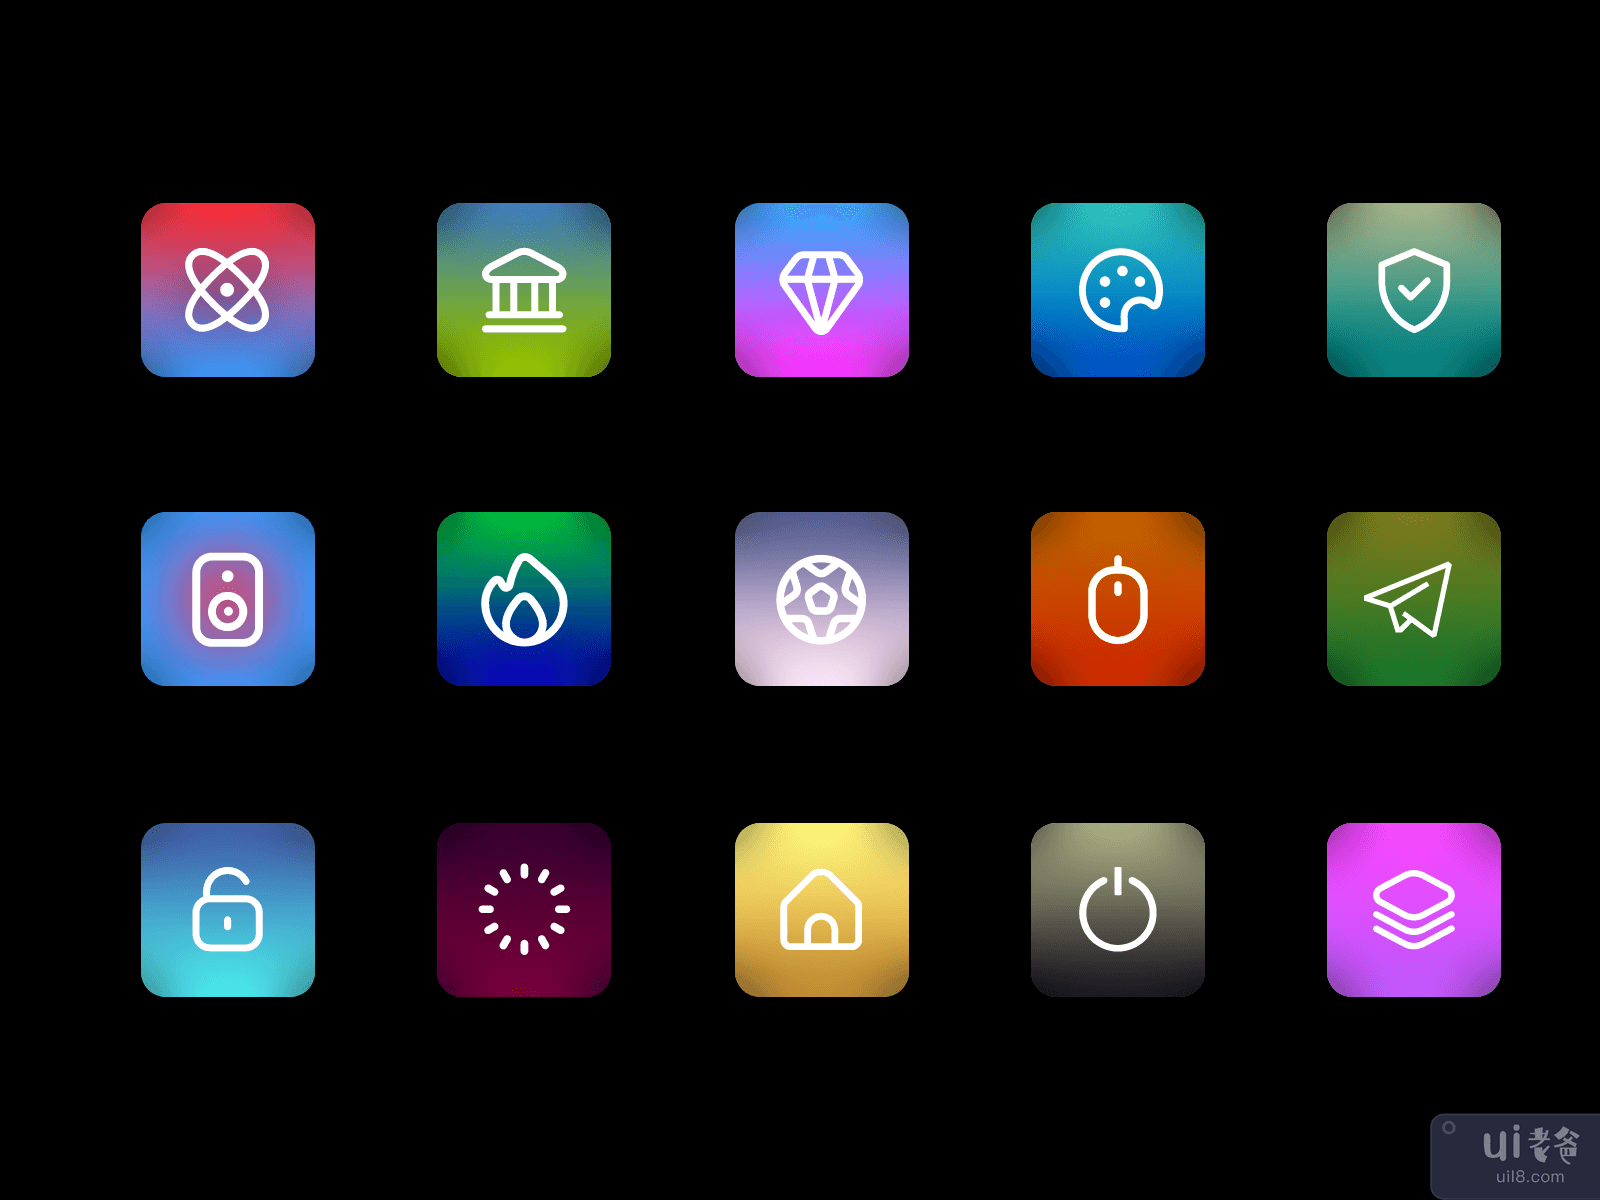 3D icons Set Pack V4 - Premium Icon Set Pack